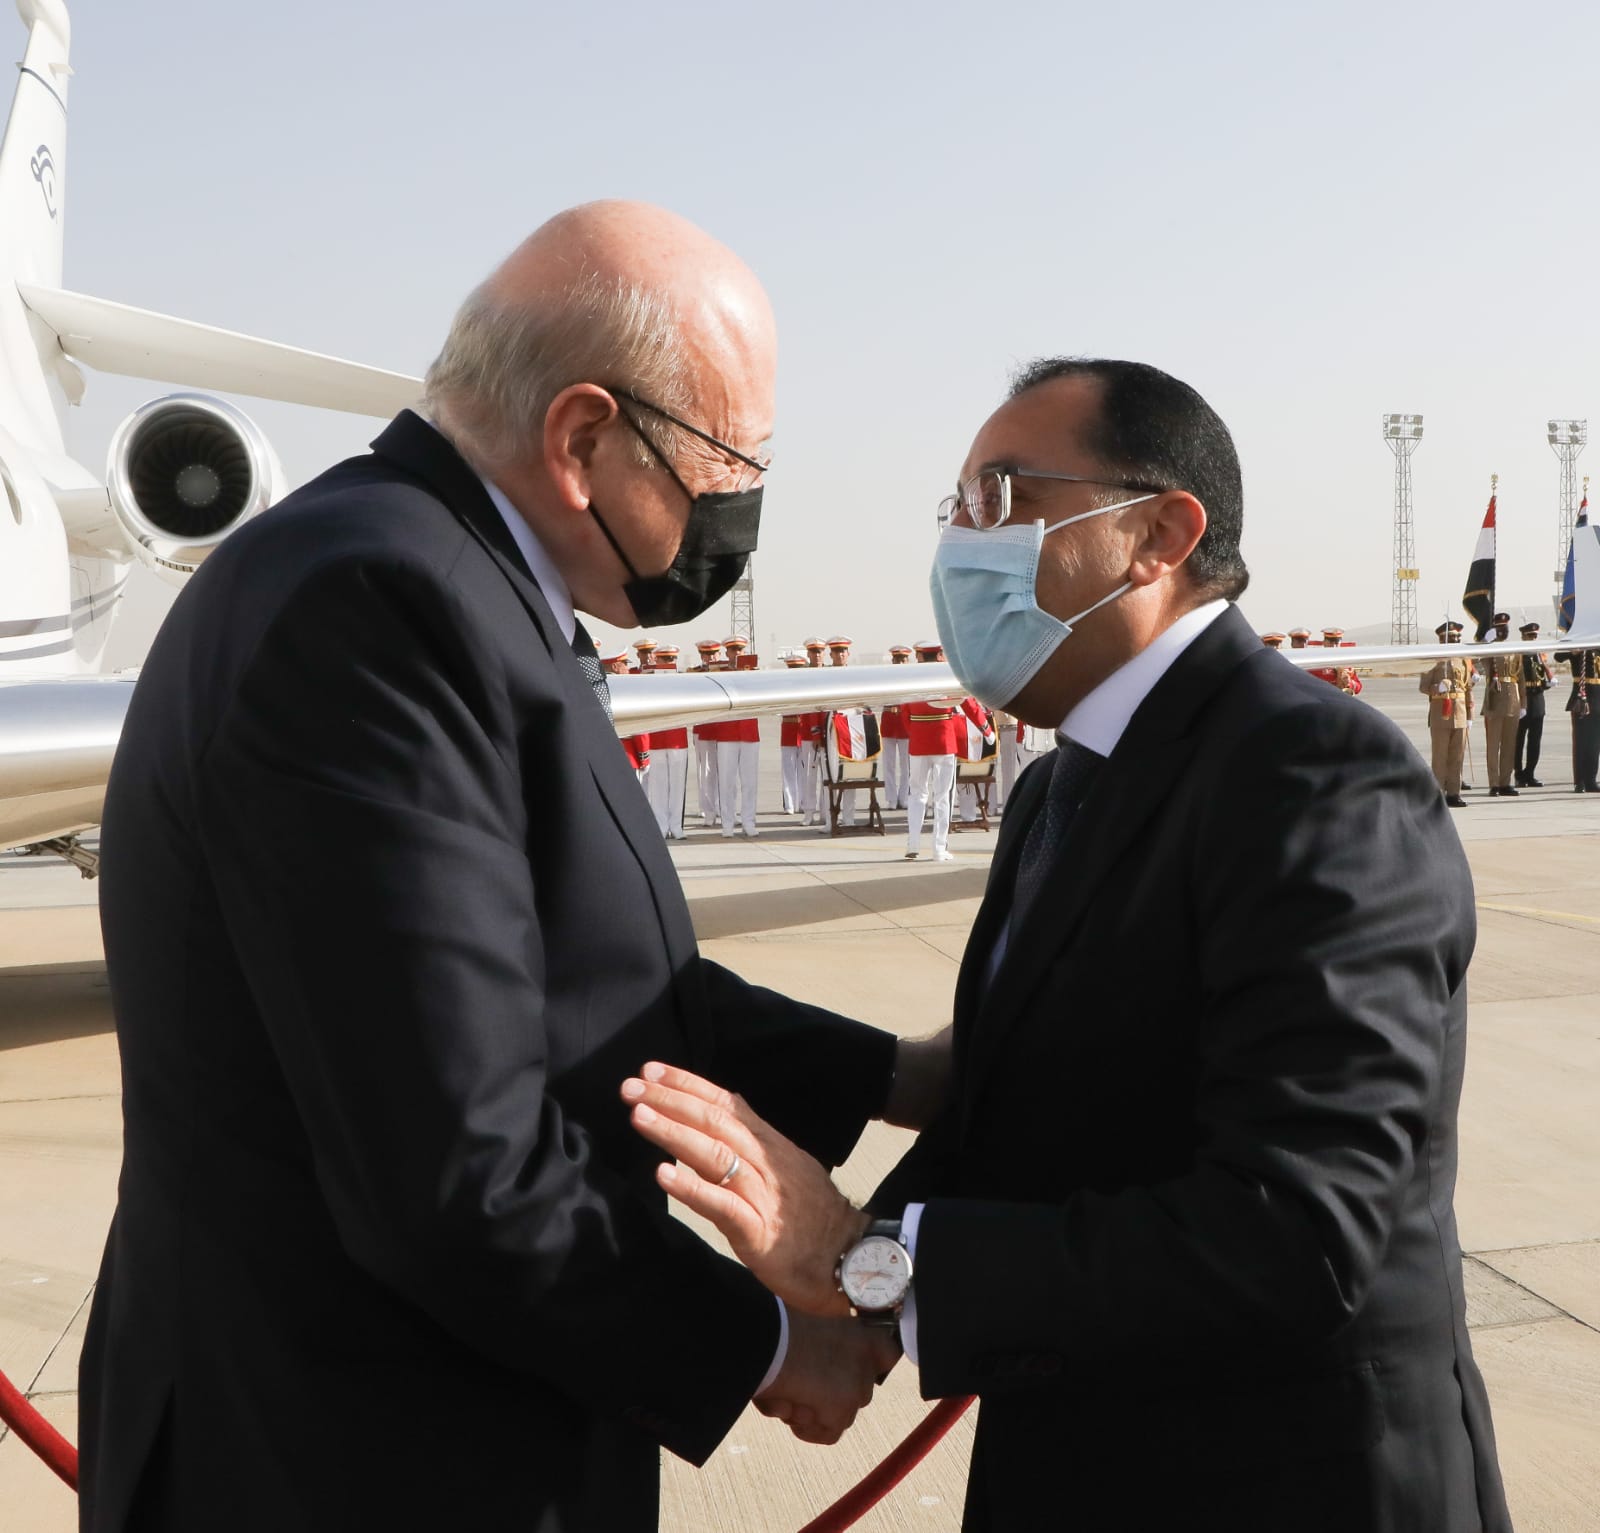  استقبال رئيس الوزراء نظيره اللبنانى بمطار القاهرة  (2)